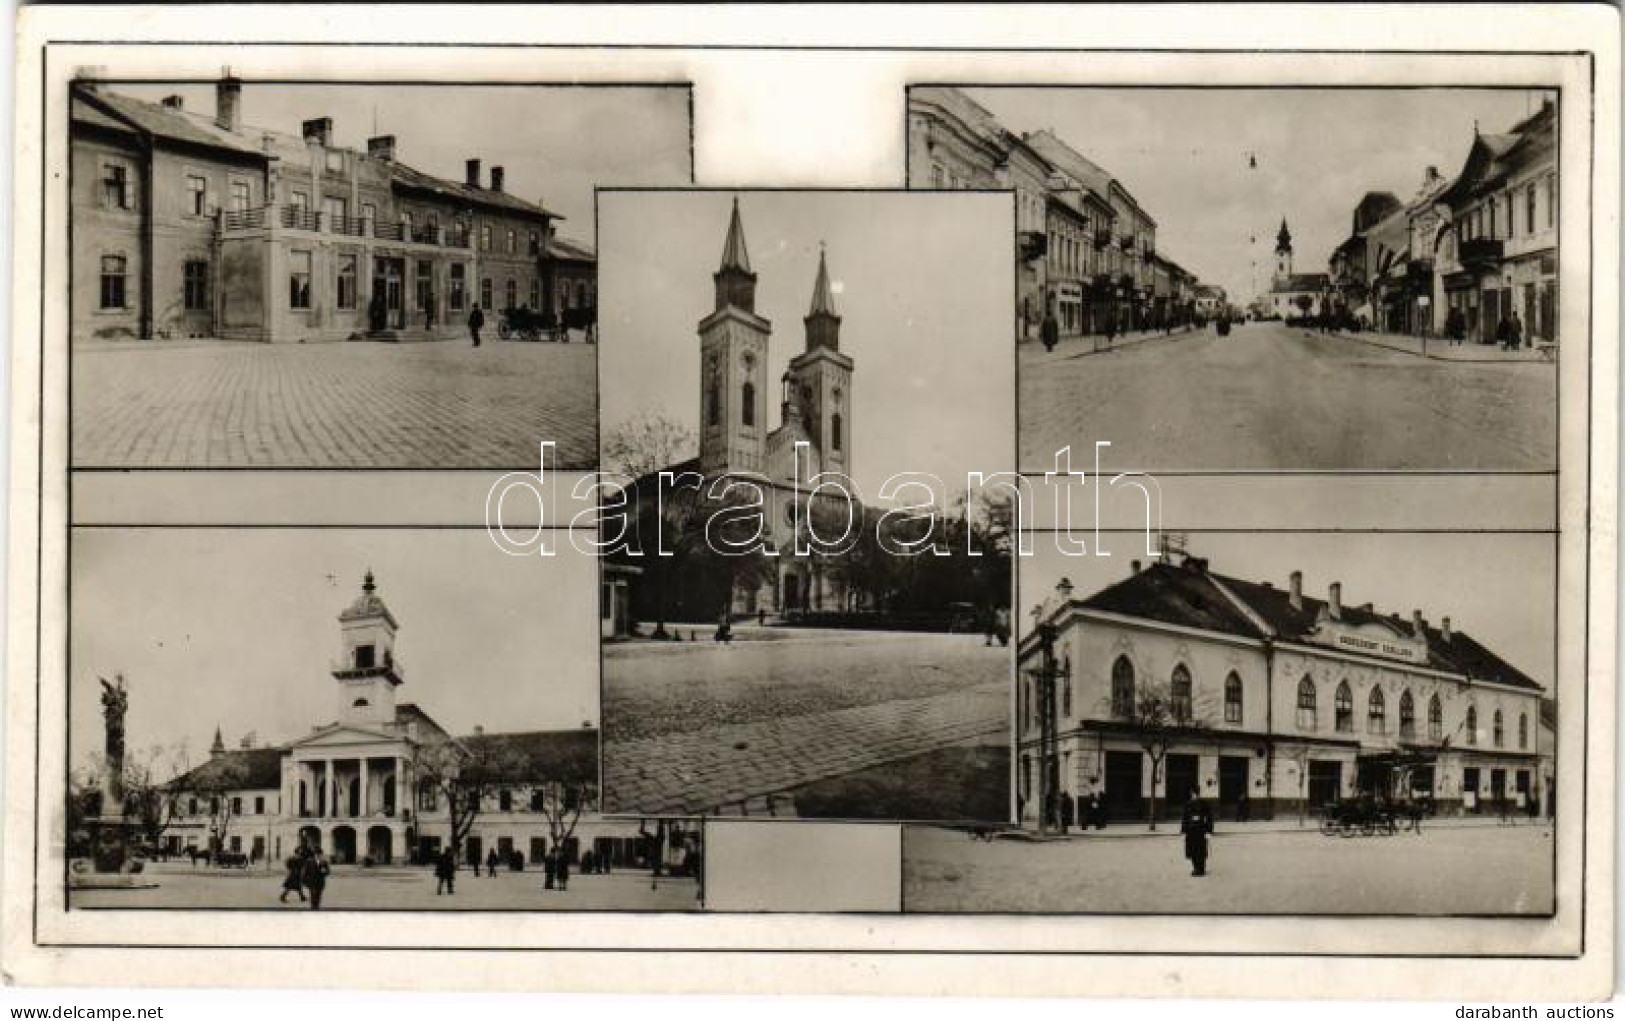 T2/T3 1942 Zombor, Sombor; Mozaiklap Városházával és Vadászkürt Szállodával / Multi-view Postcard With Town Hall And Hot - Ohne Zuordnung